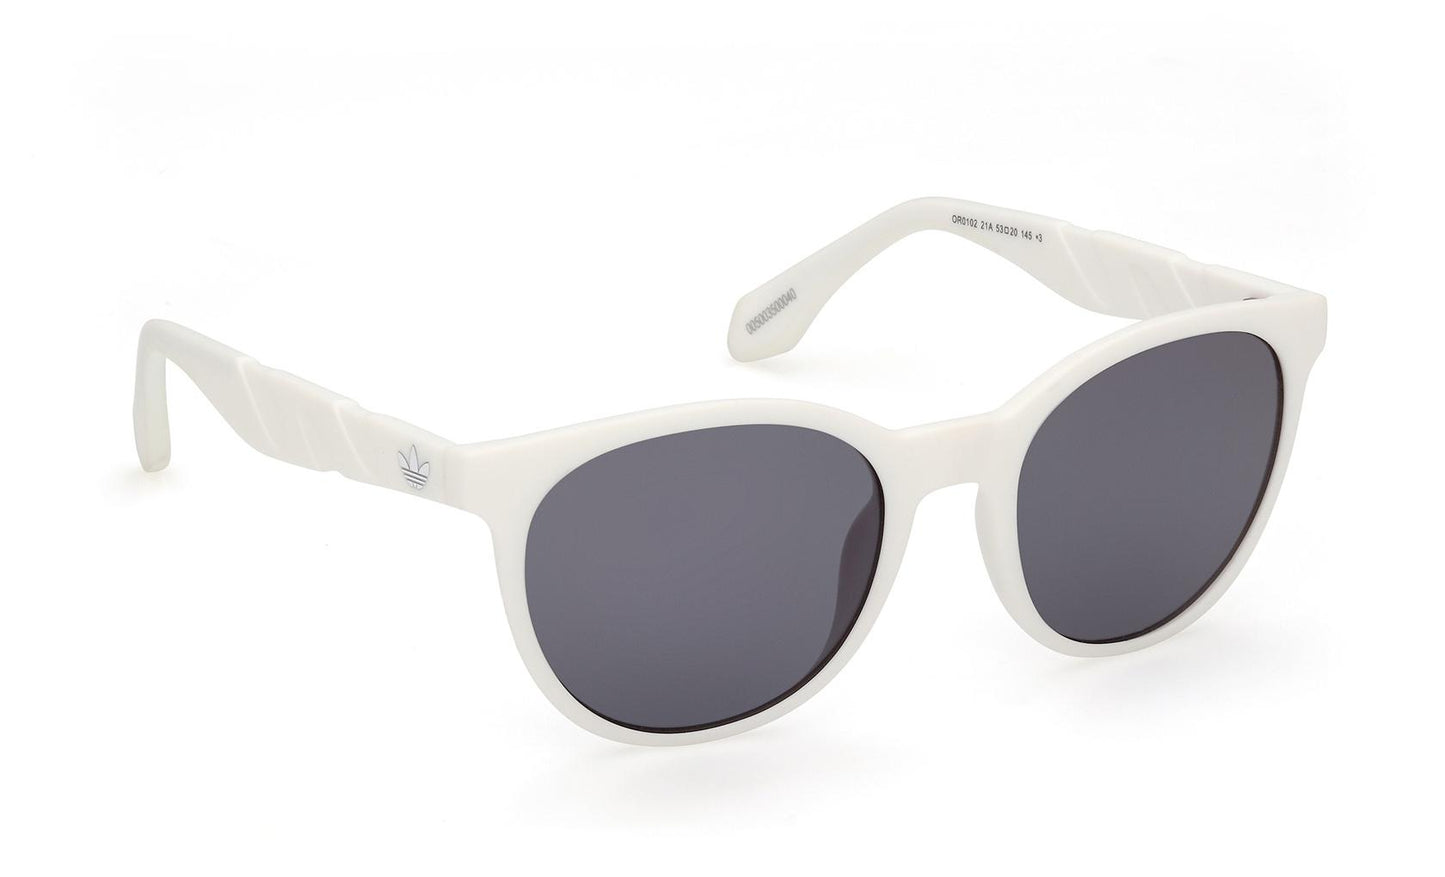 Adidas Originals Sunglasses OR0102 21A